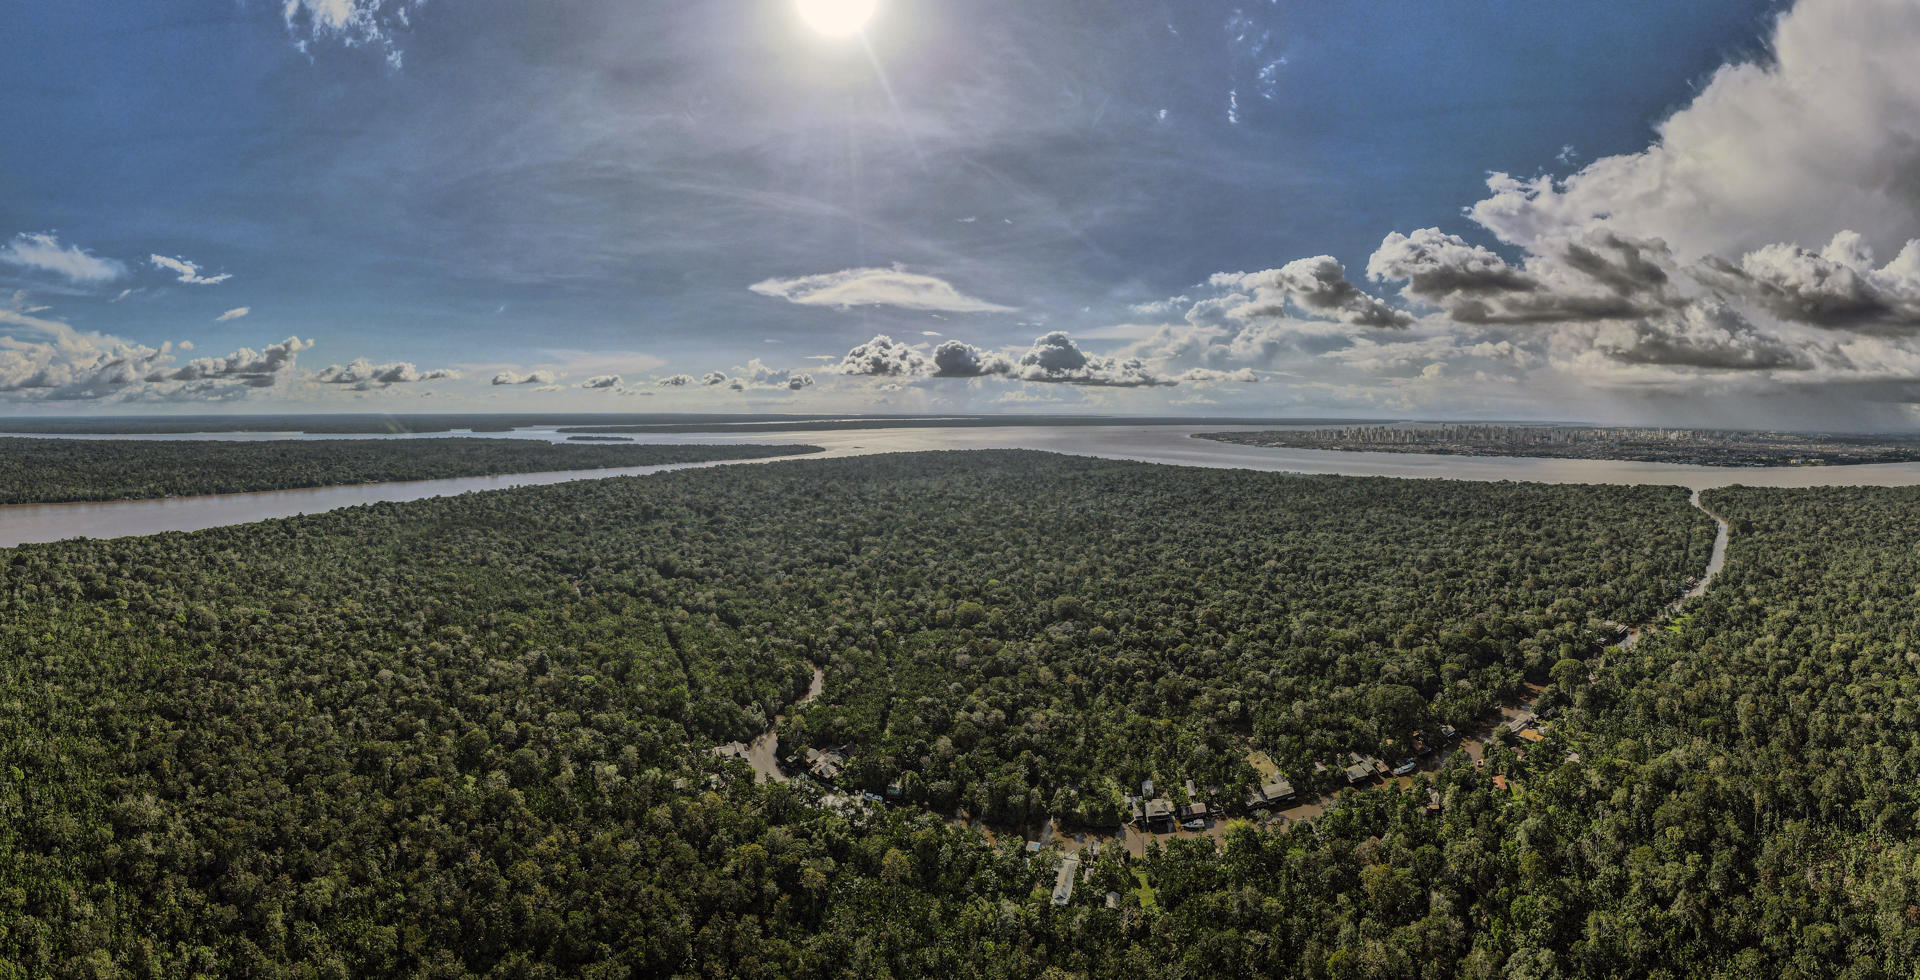 Vista aérea de una zona de la Floresta Amazónica, en el estado de Pará, norte de Brasil, en una fotografía de archivo. EFE/Antonio Lacerda